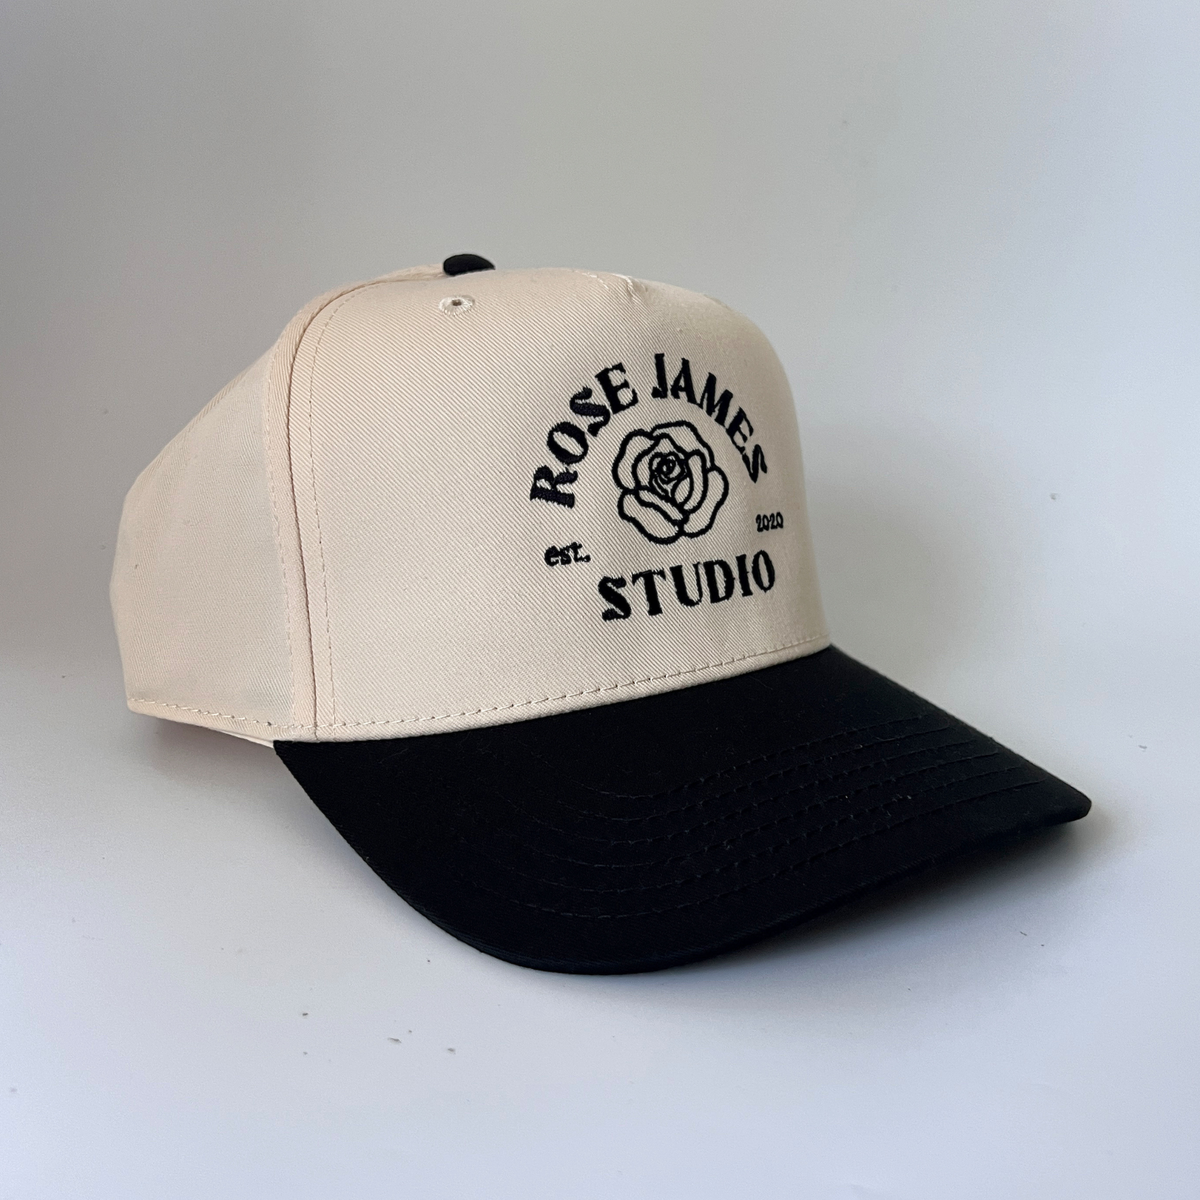 The Studio Hat